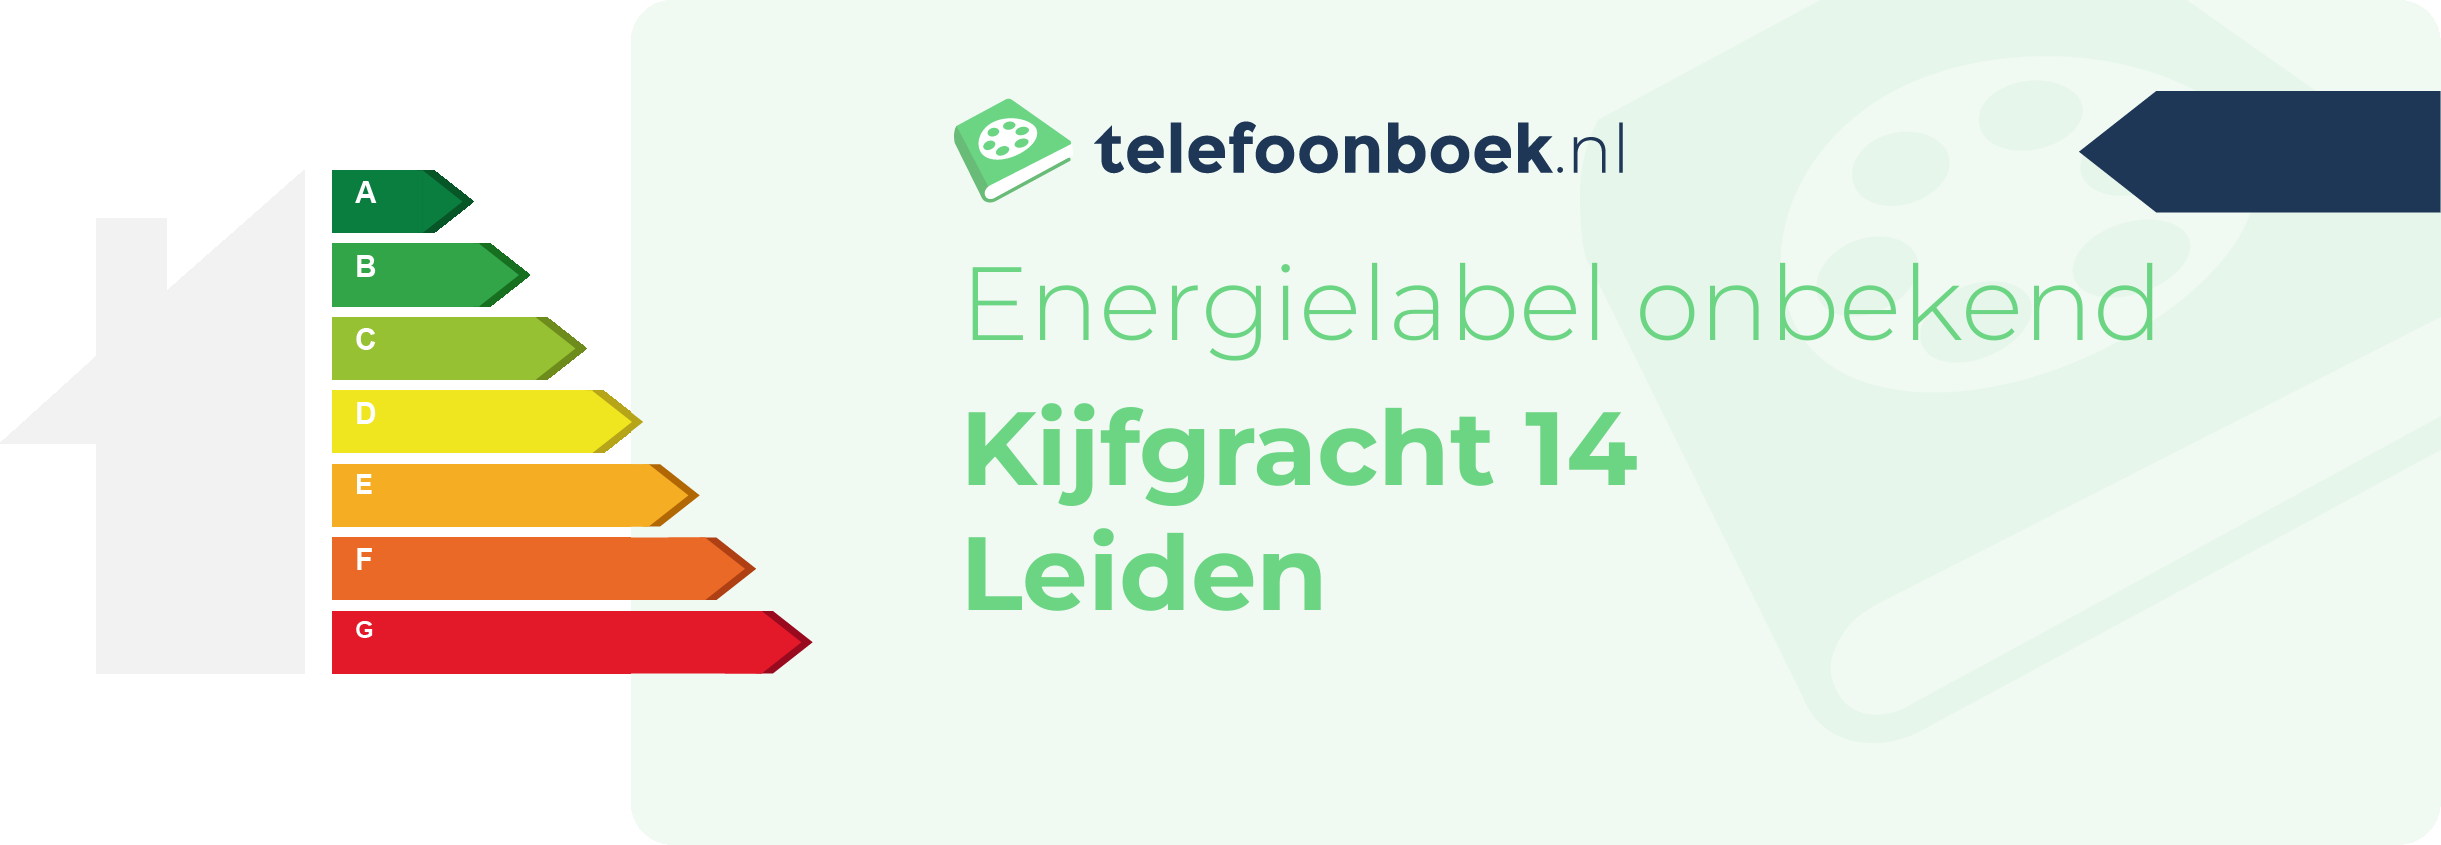 Energielabel Kijfgracht 14 Leiden